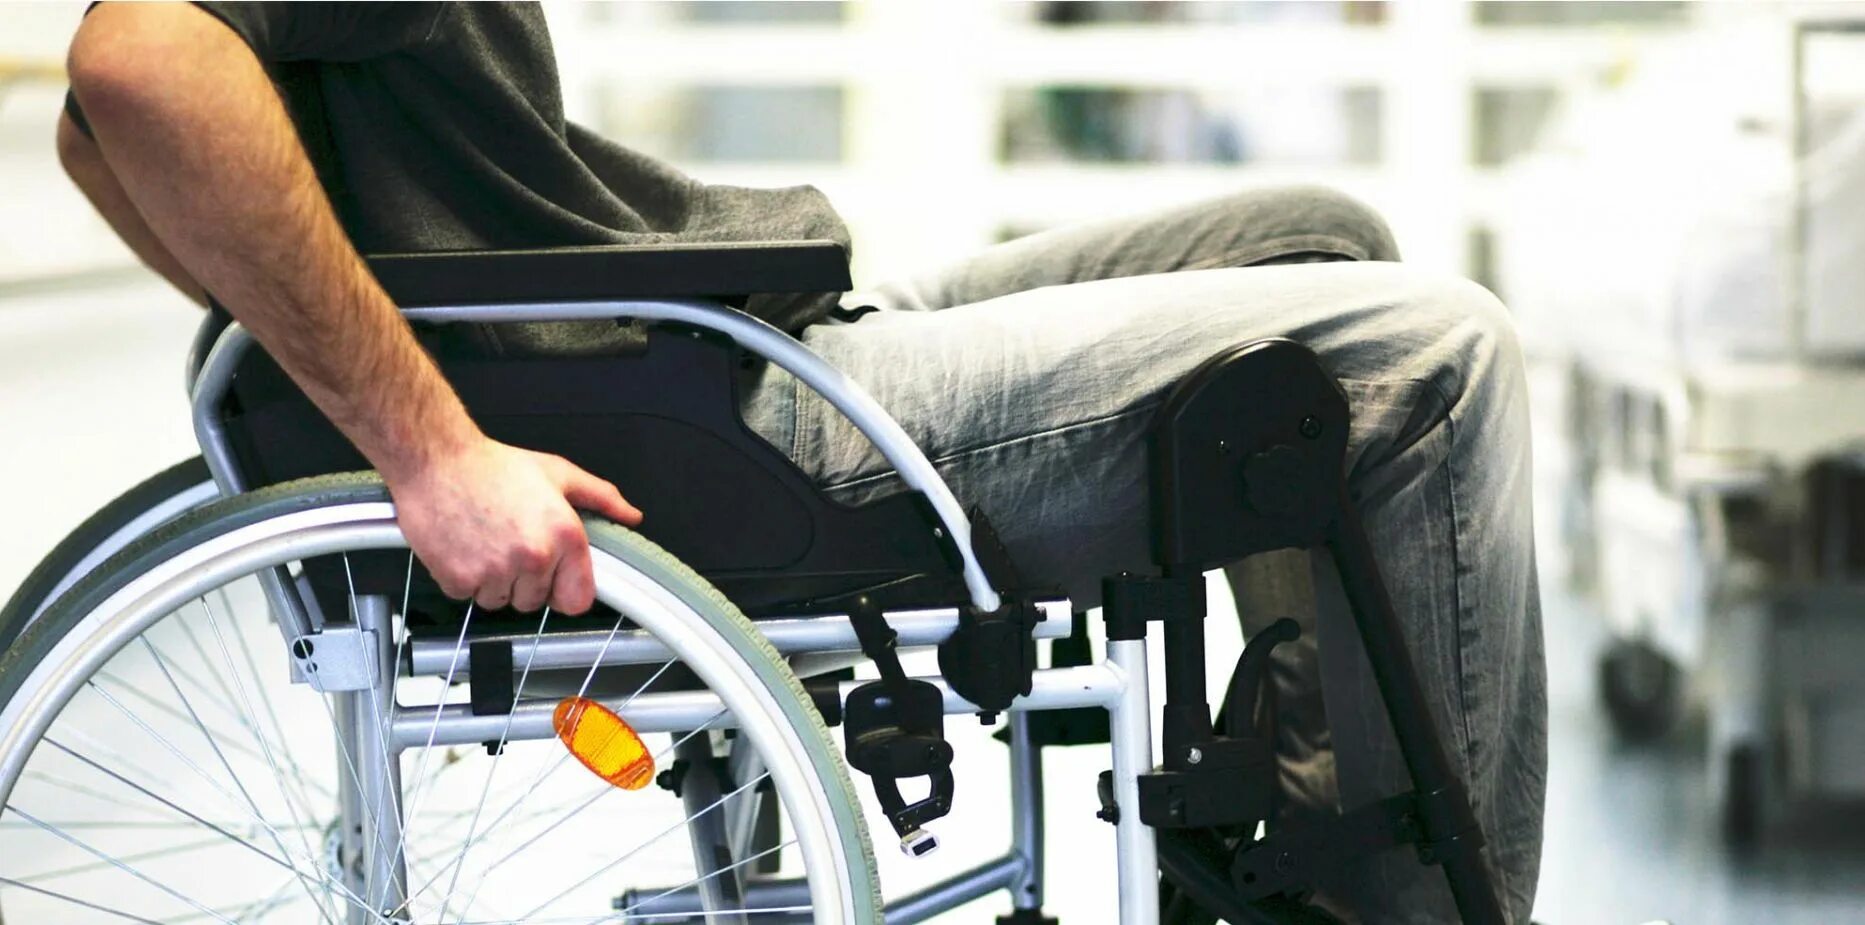 Rollstuhl. Чехлы для инвалидов. Ограниченные возможности колена. Боль в суставах инвалидное кресло. Инвалидность компания